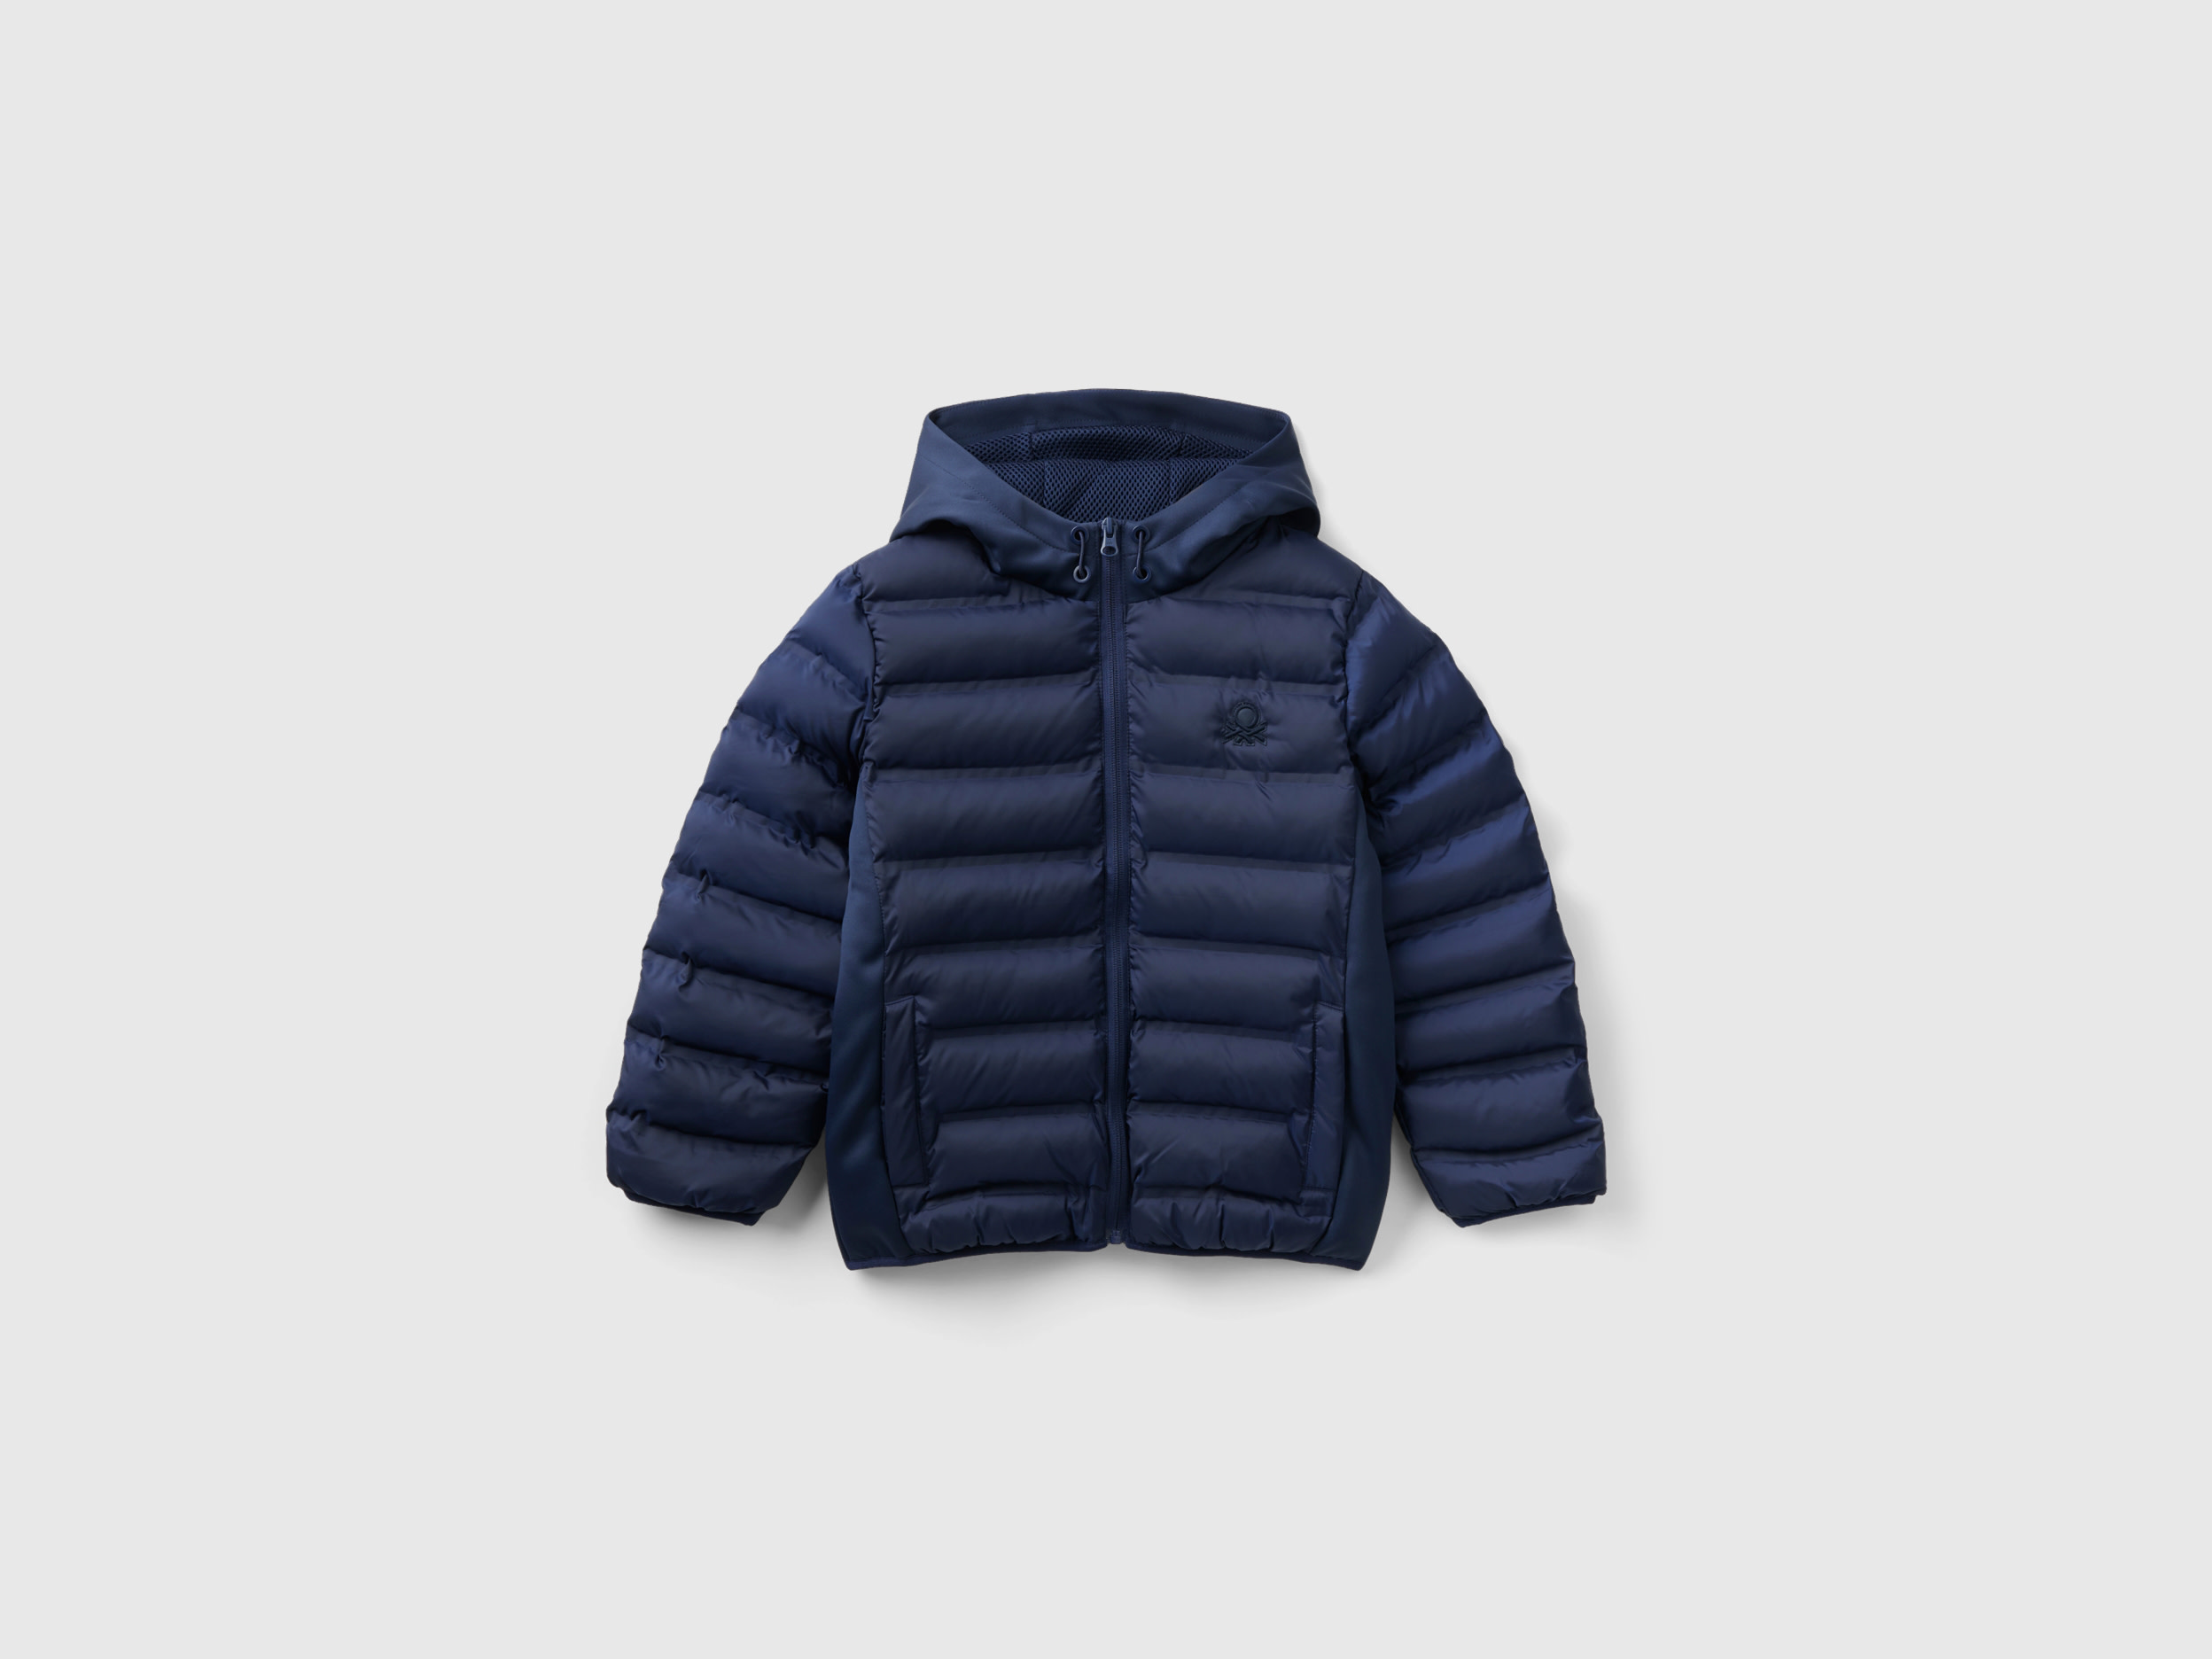 Benetton, Jacket With Neoprene Details, size M, Dark Blue, Kids